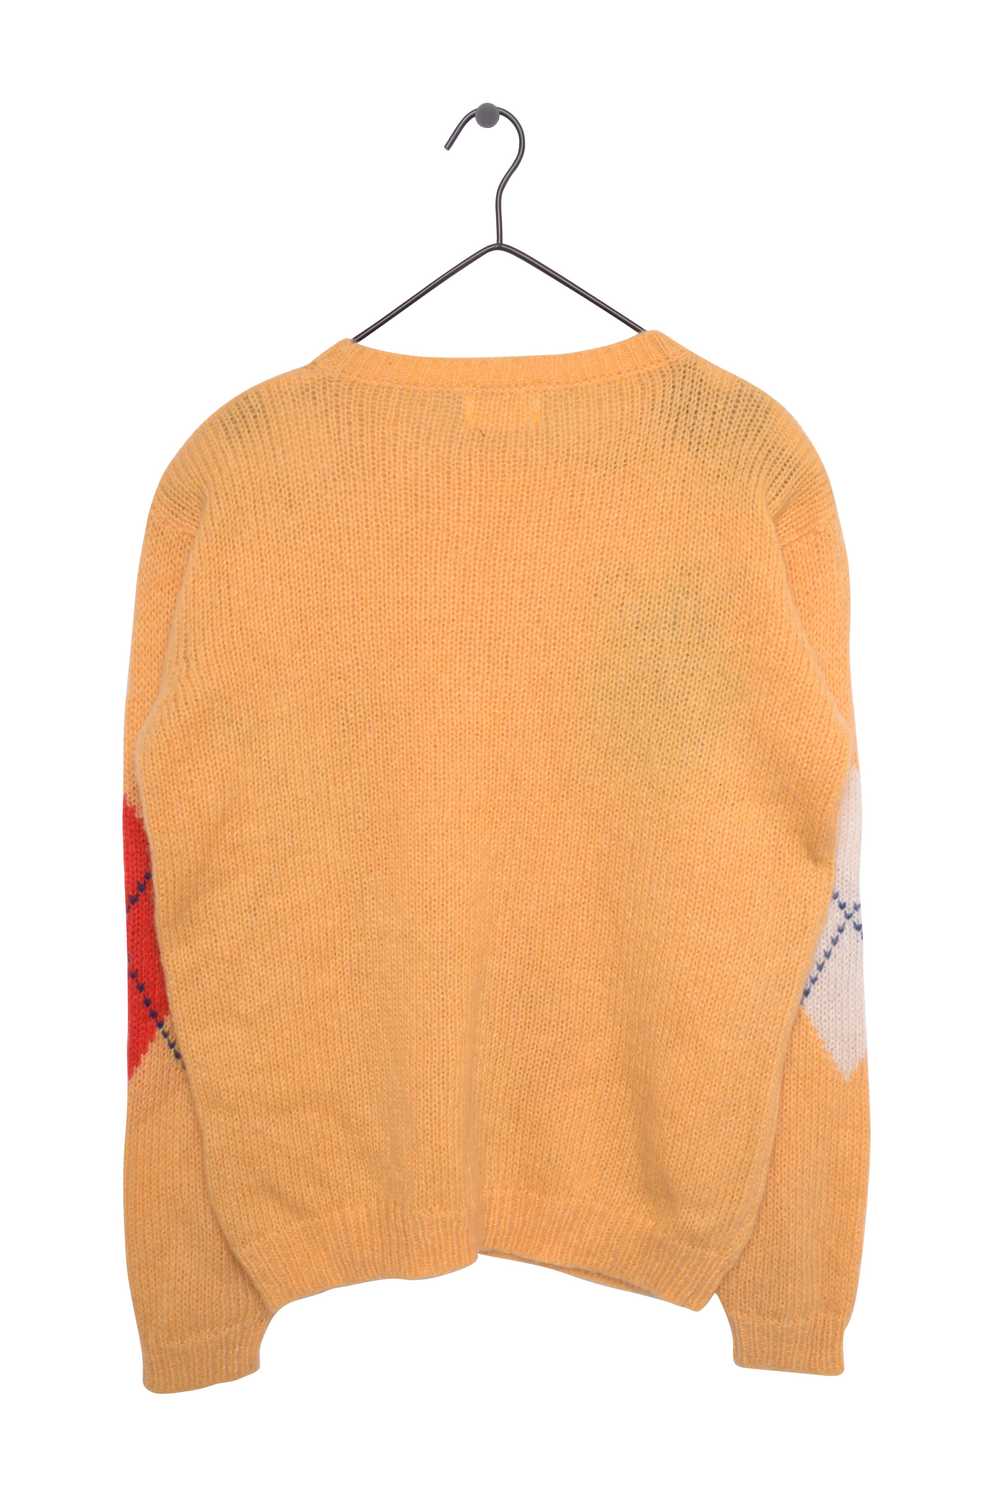 Argyle Sweater - image 3